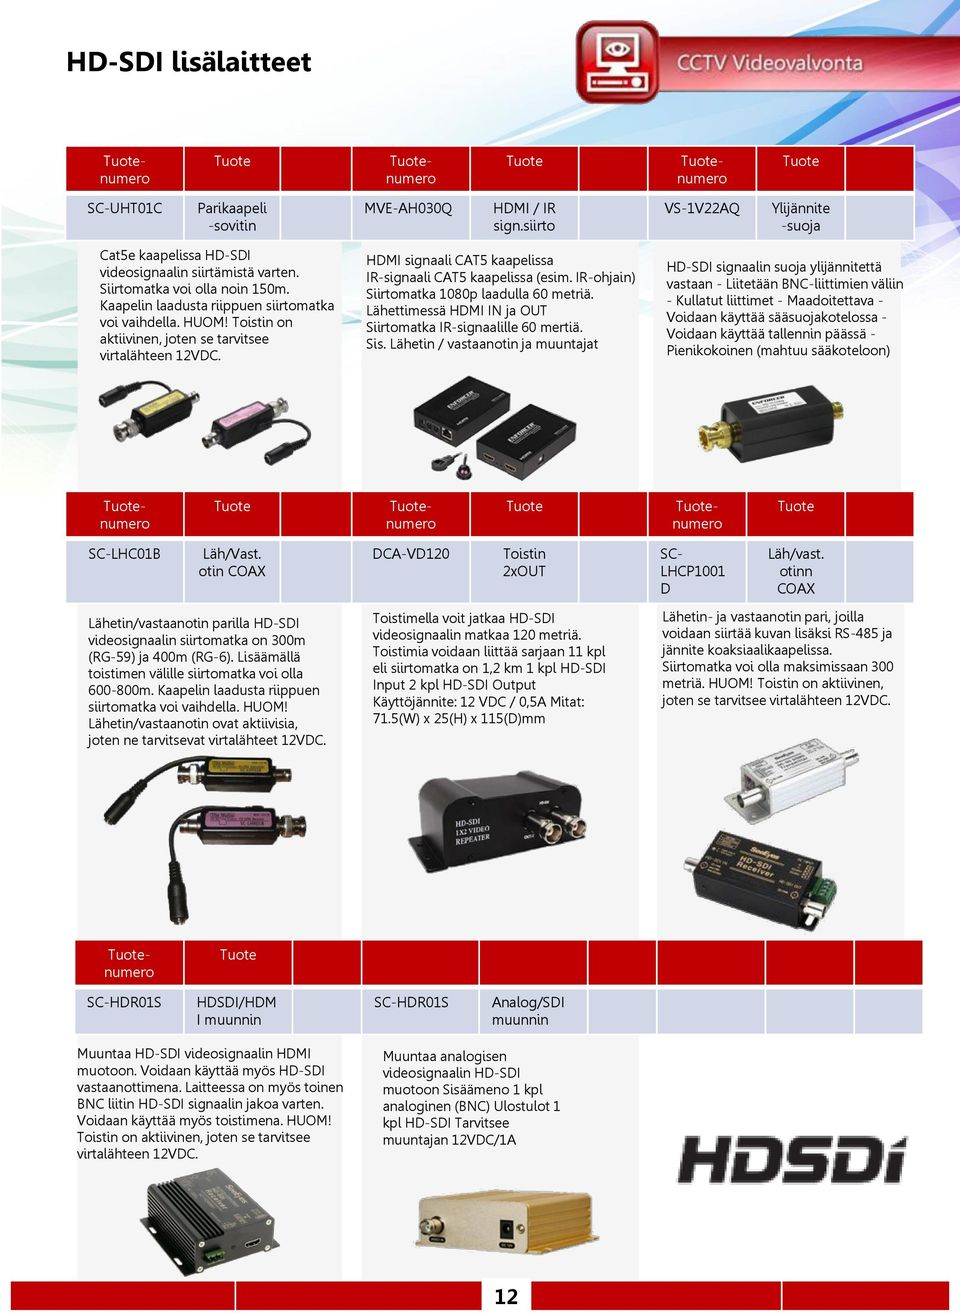 HDMI signaali CAT5 kaapelissa IR-signaali CAT5 kaapelissa (esim. IR-ohjain) Siirtomatka 1080p laadulla 60 metriä. Lähettimessä HDMI IN ja OUT Siirtomatka IR-signaalille 60 mertiä. Sis.